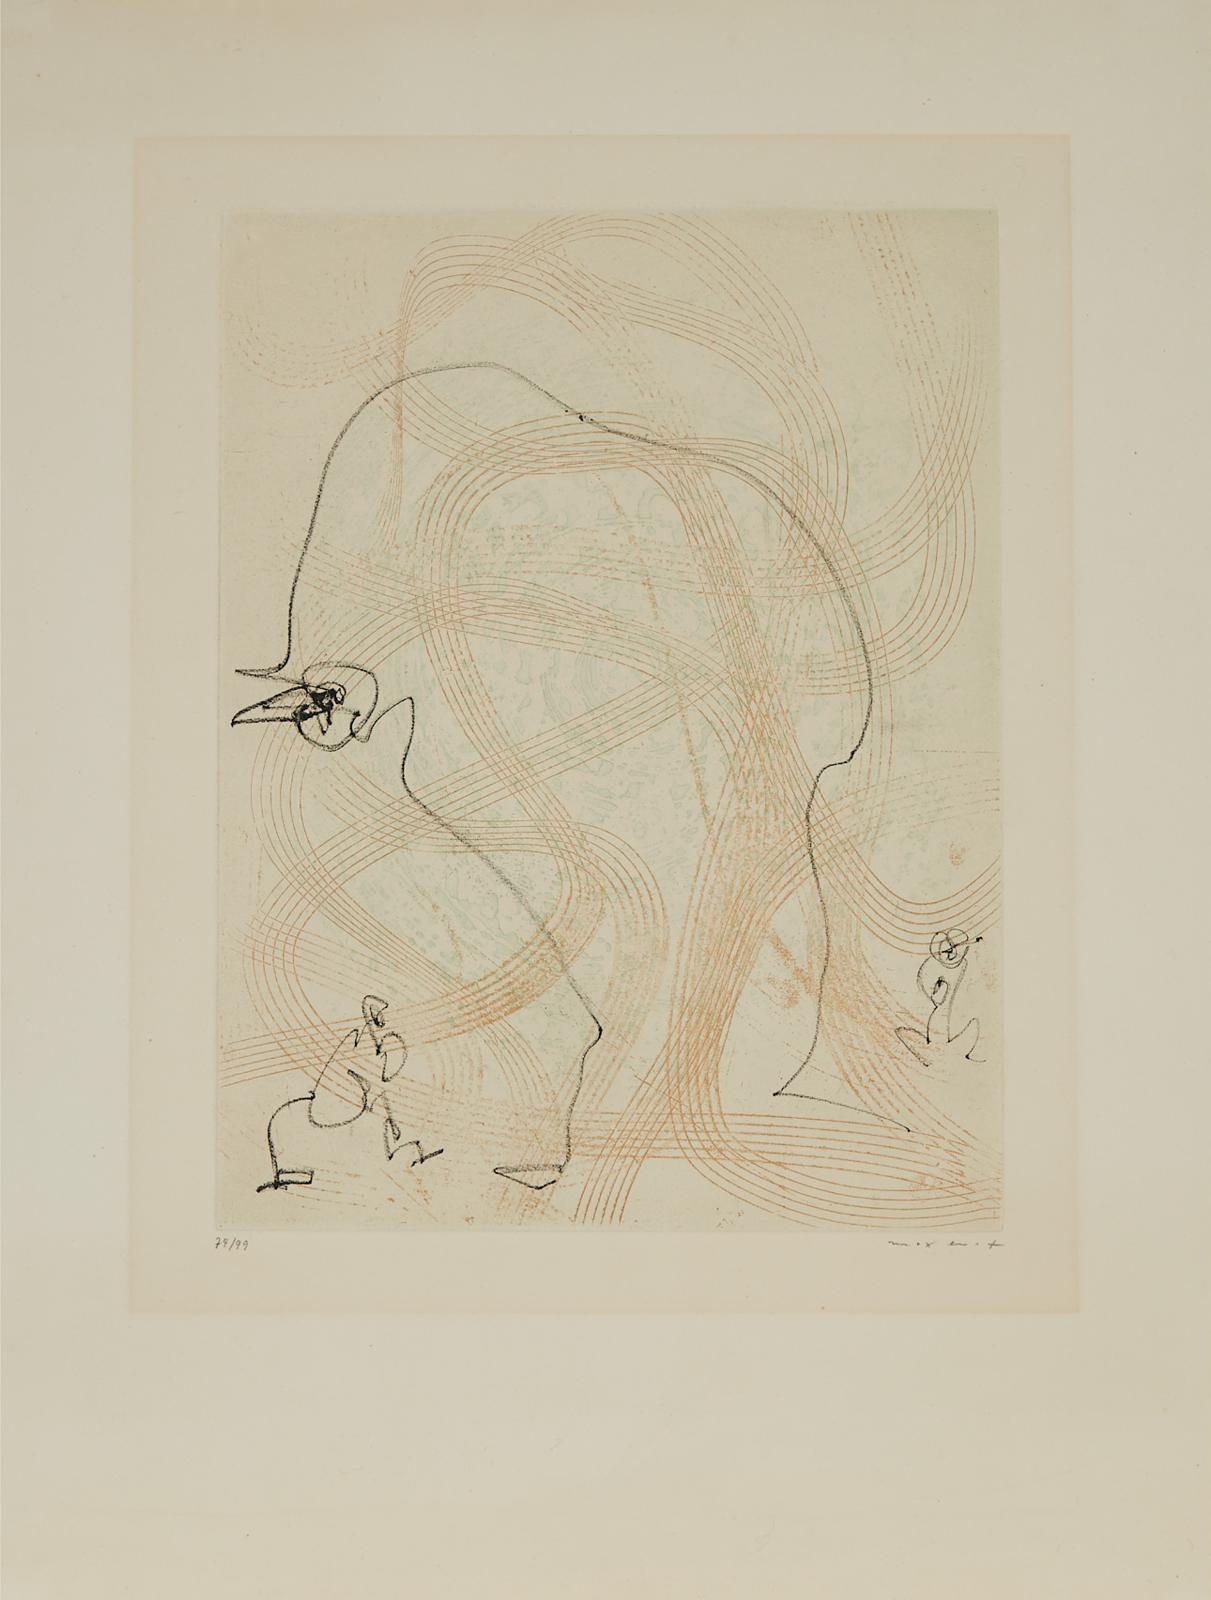 Max Ernst (1891-1976) - Bonjour, 1966 [spies/Leppien, 109b]